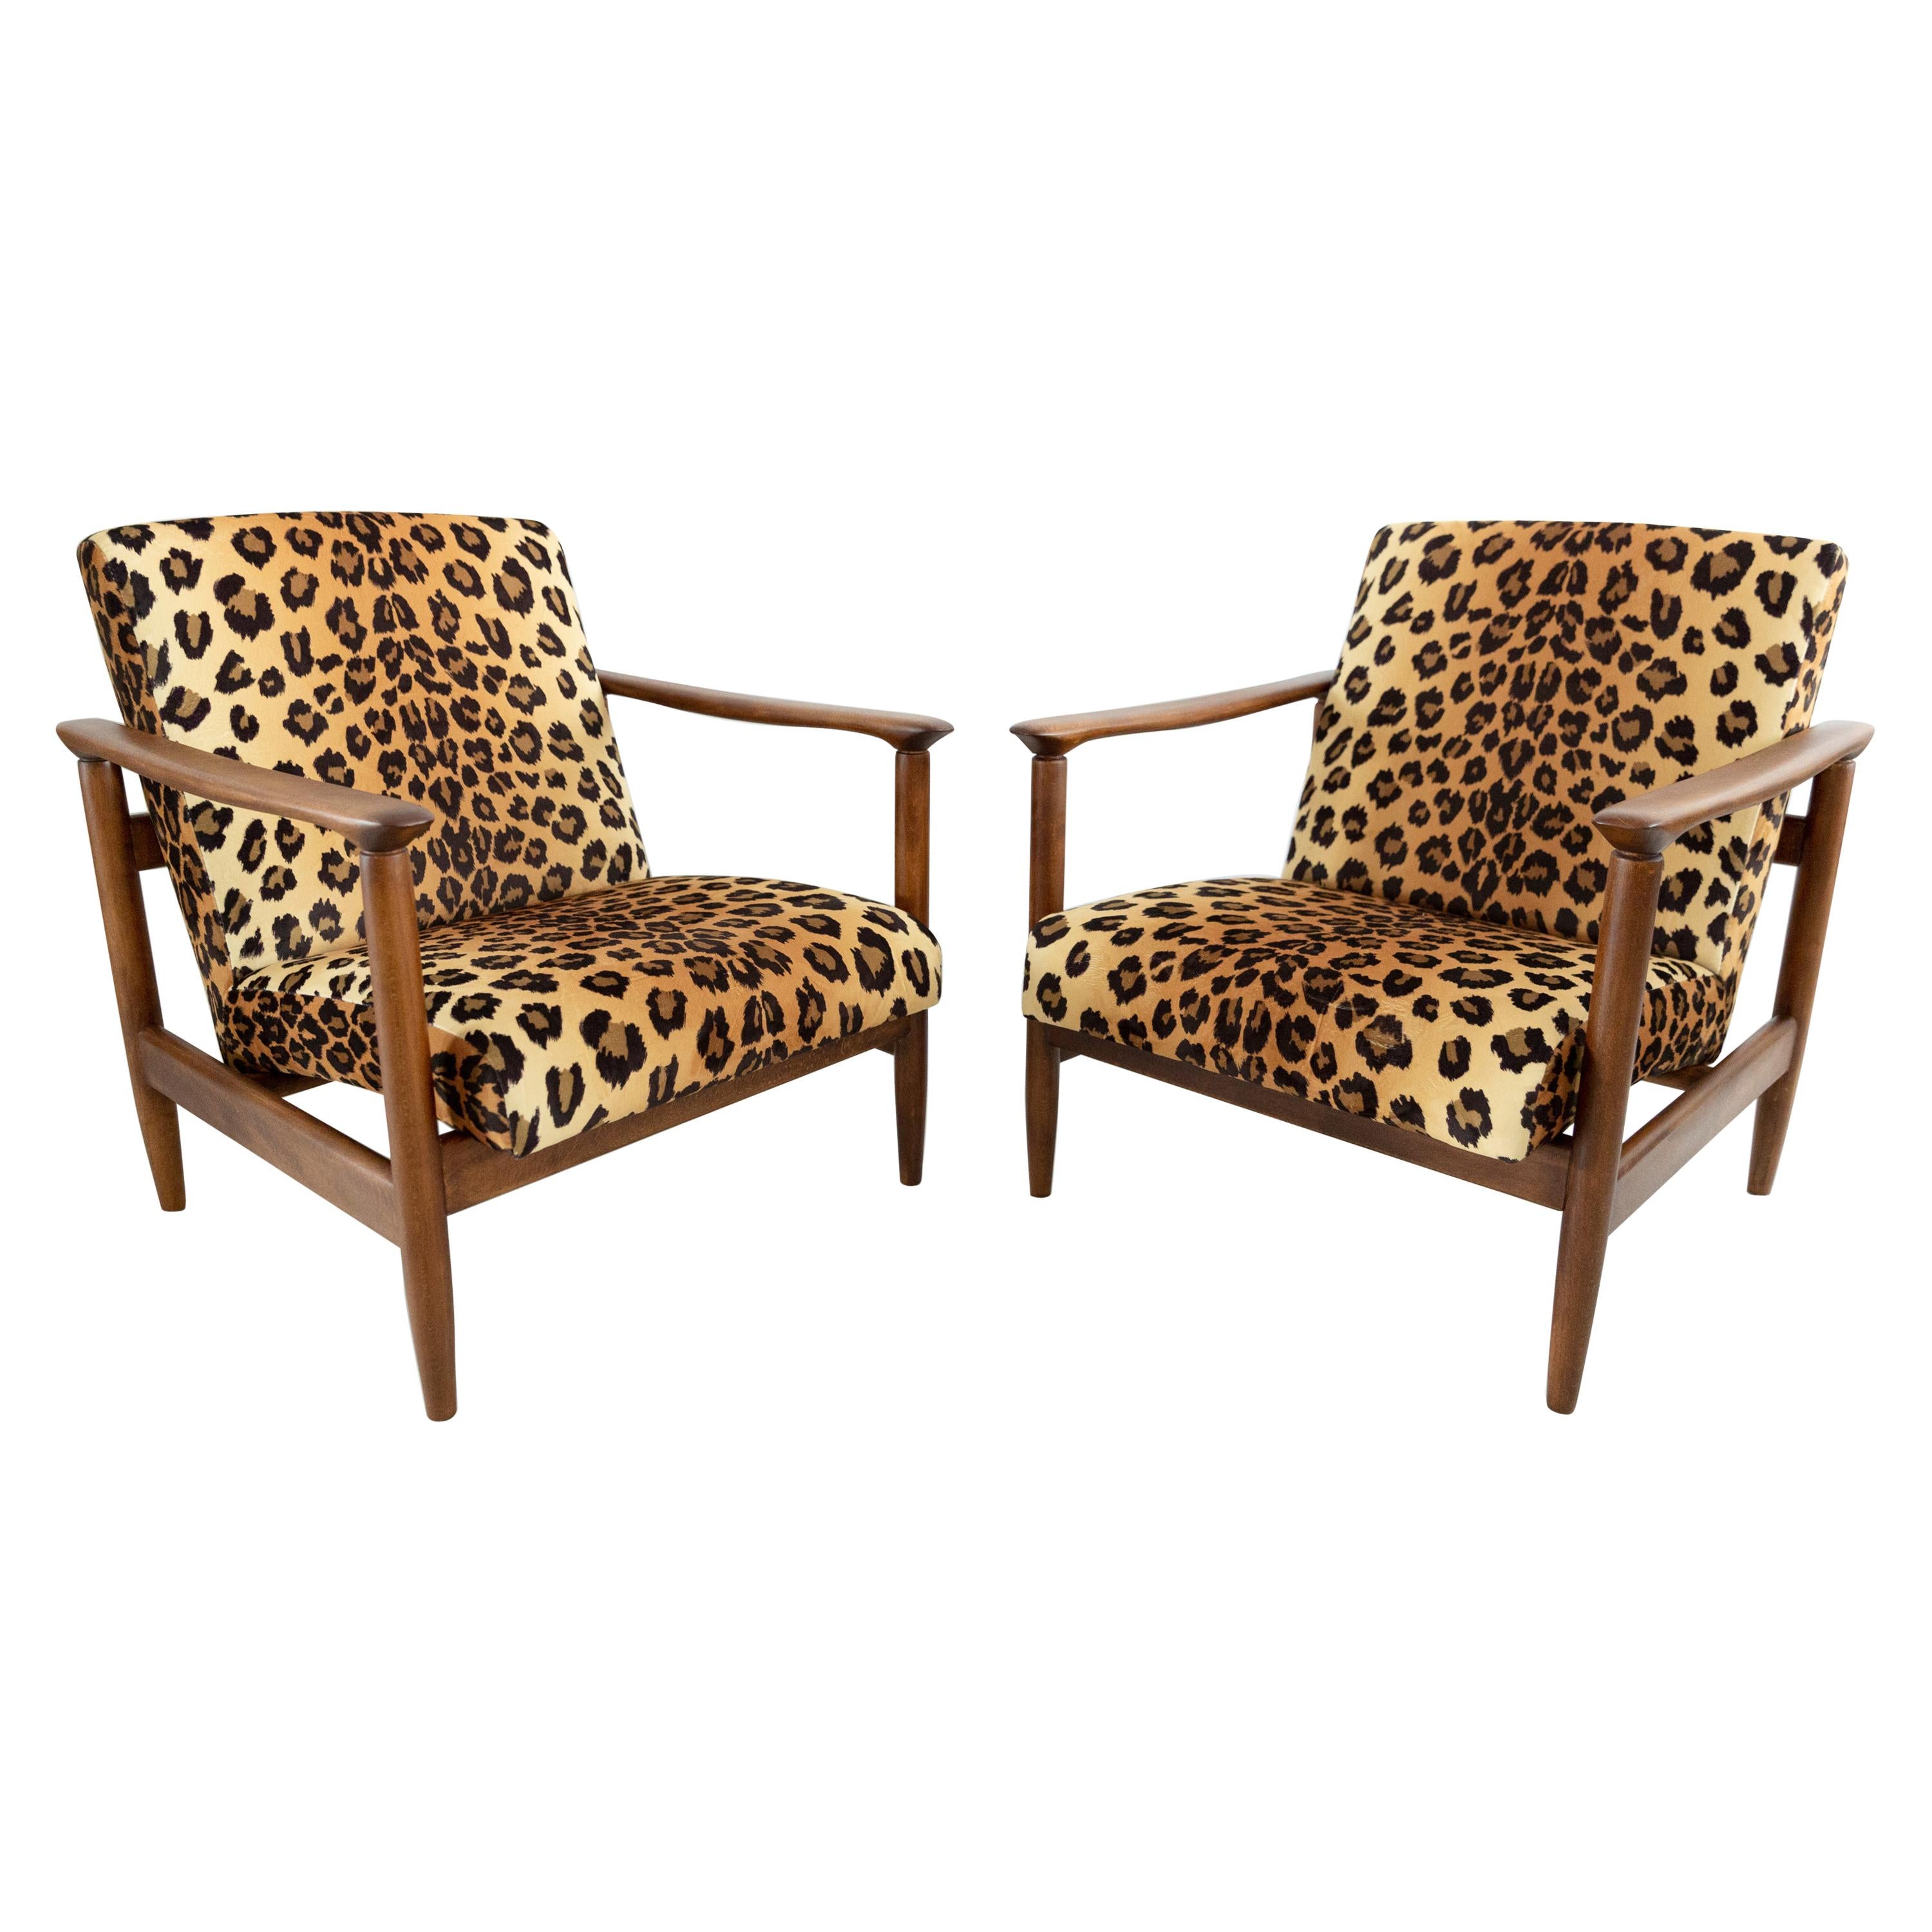 Ensemble de deux fauteuils en velours imprimé léopard, Edmund Homa, GFM-142, années 1960, Pologne